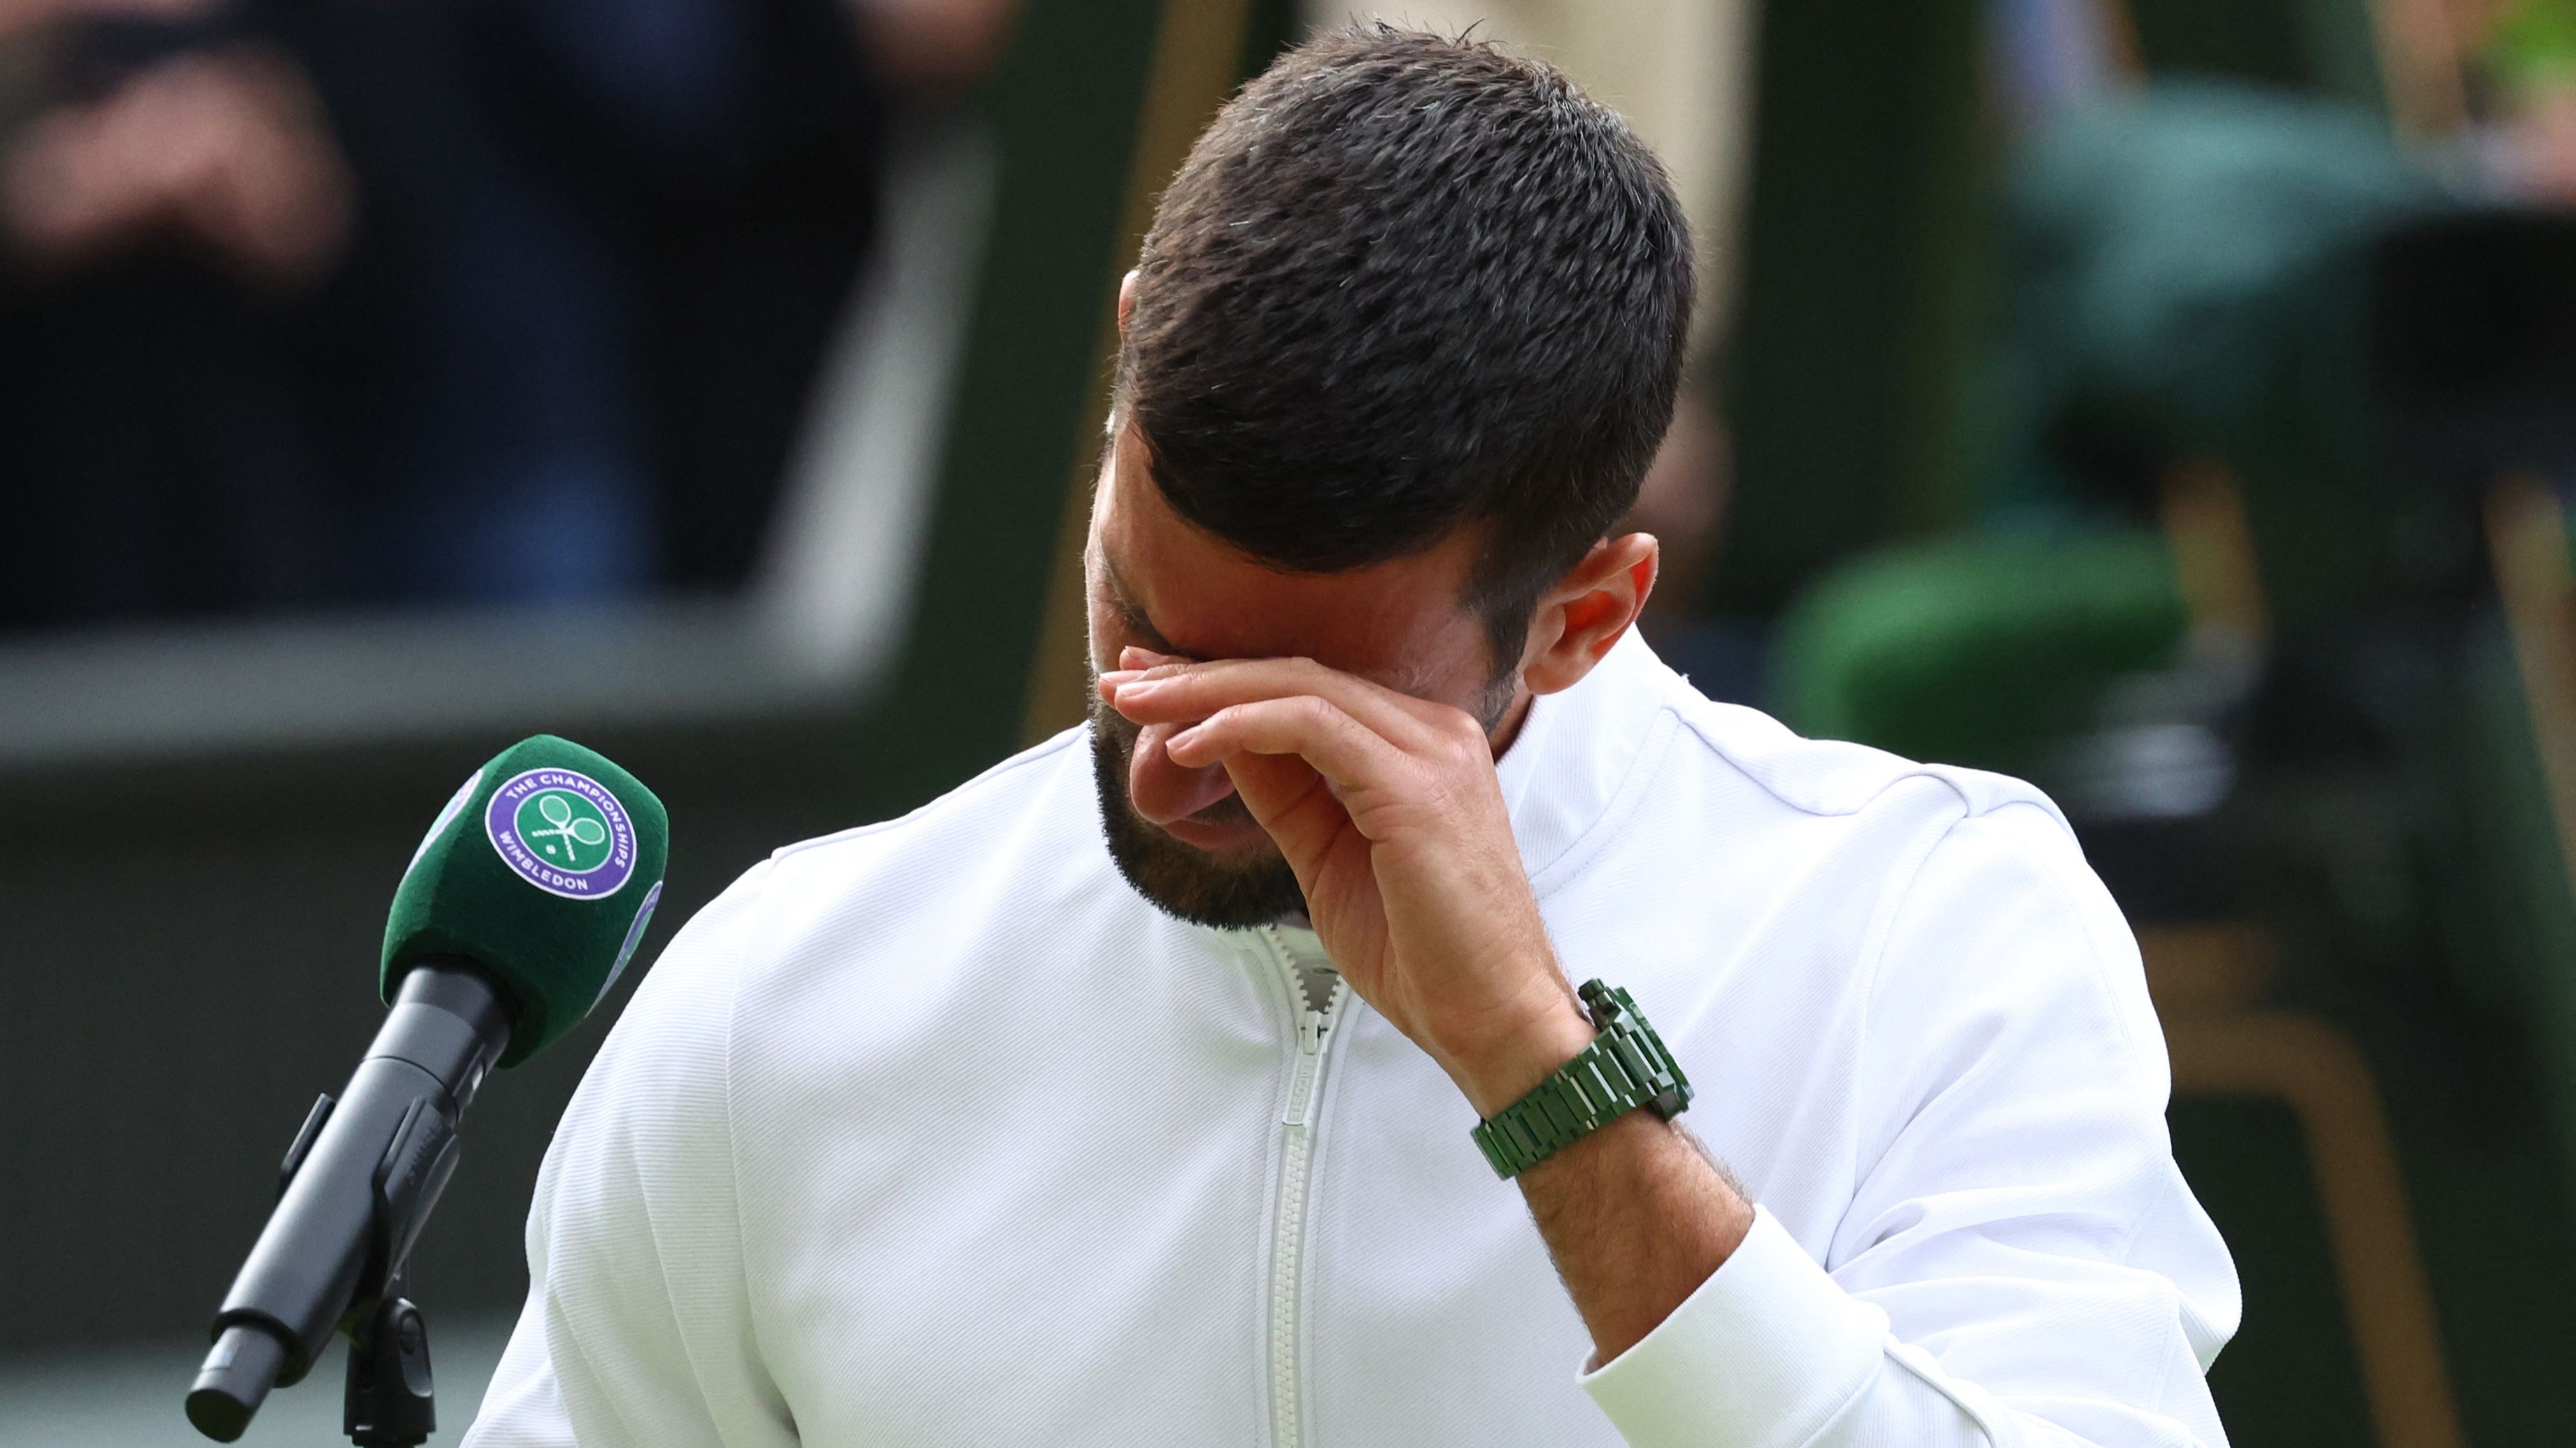 Wimbledon LIVE Novak Djokovic v Carlos Alcaraz in mens singles final - Live